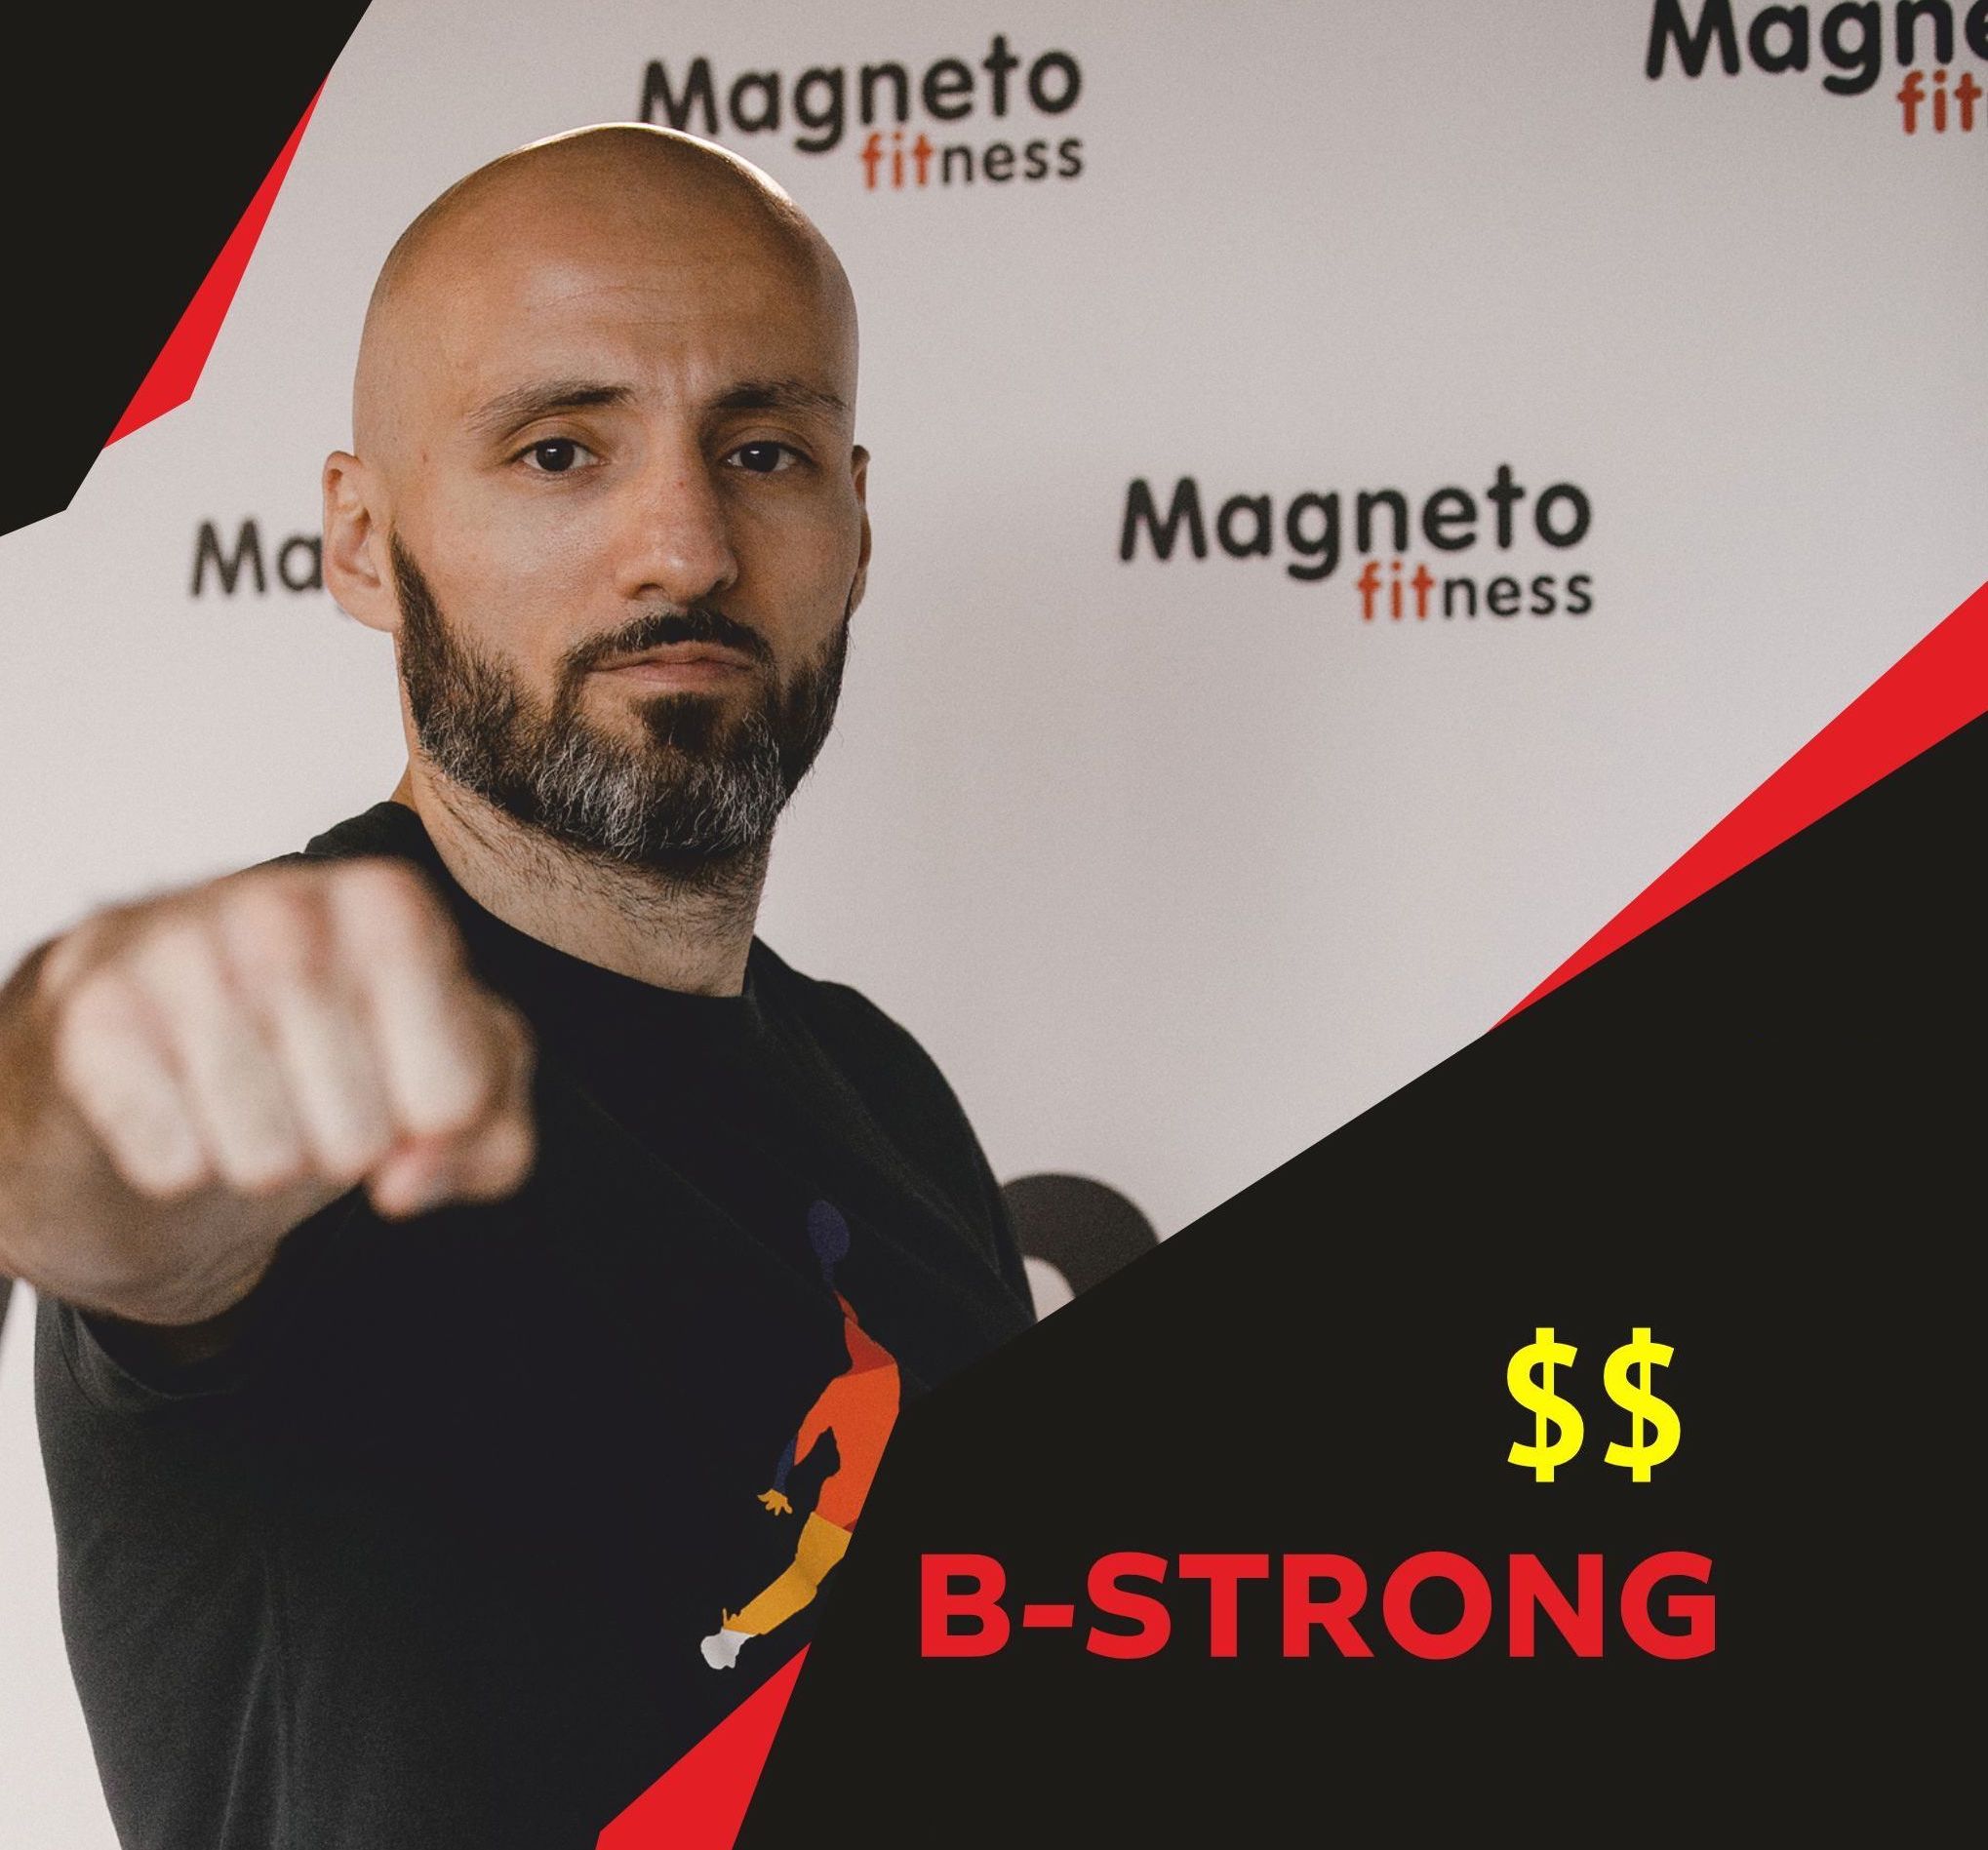 Коммерческий урок b-strong ПТ,10:00 - Magneto Fitness Марьино